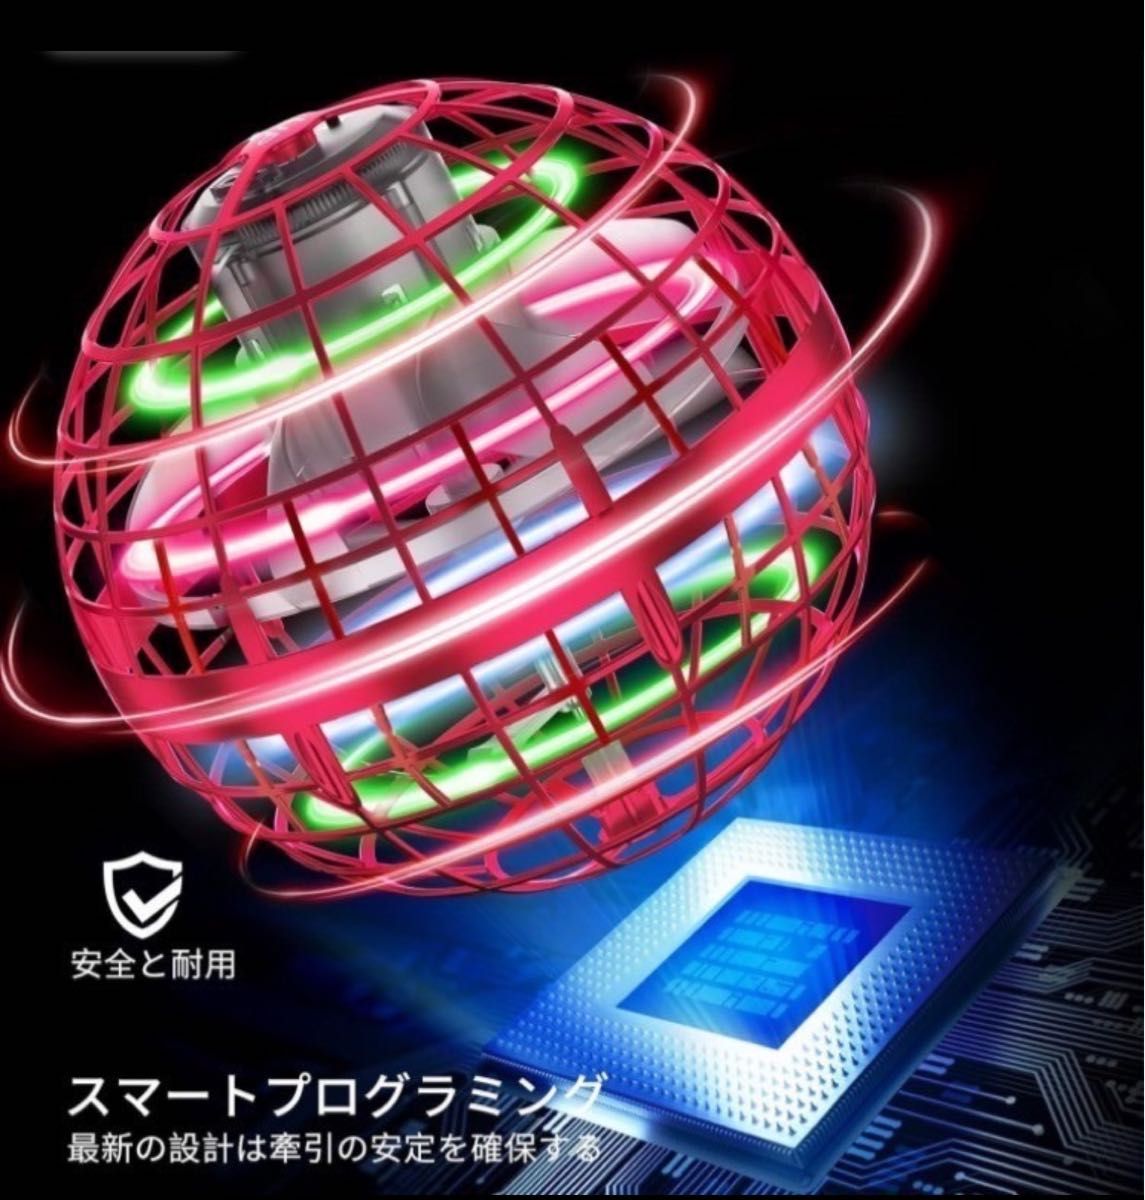 フライングボール 赤 ジャイロ 飛行ボール UFO スピナー おもちゃ